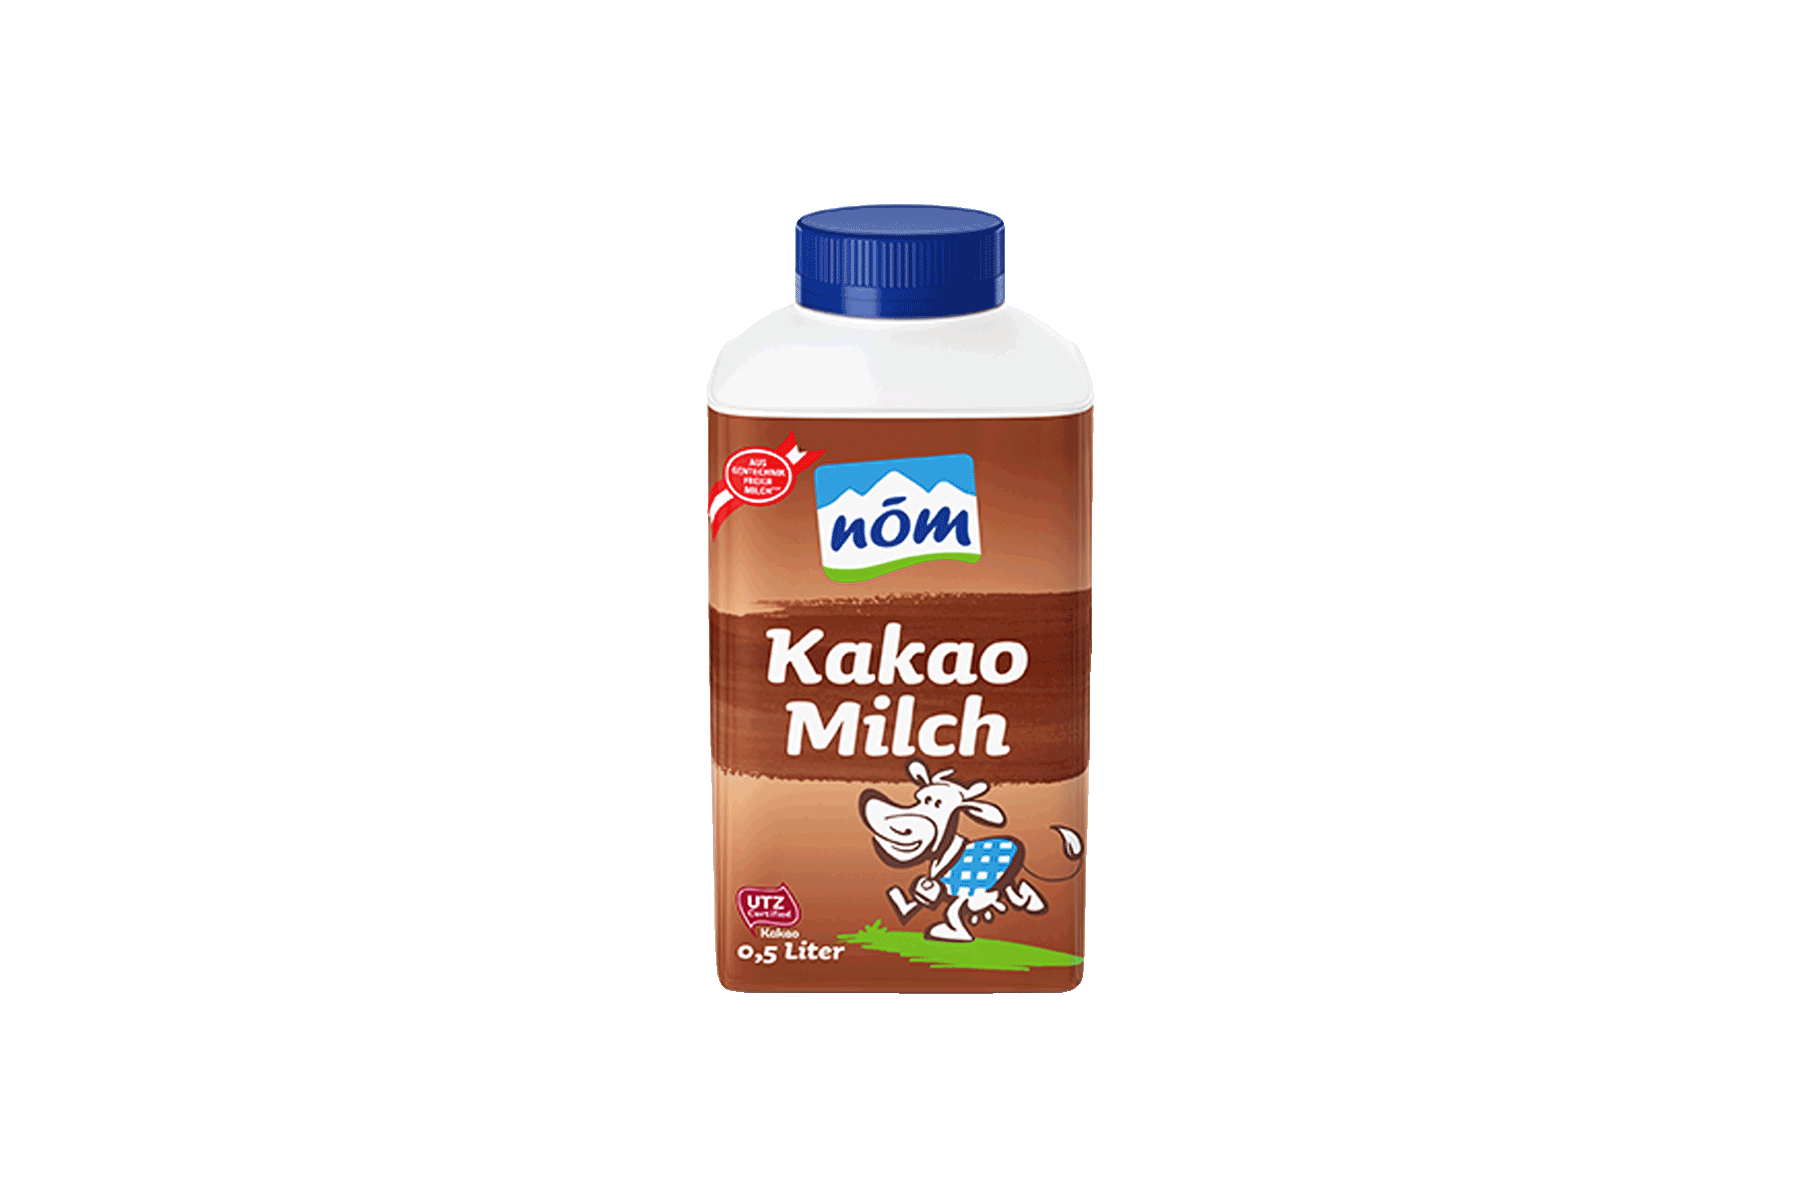 Nöm Kakaomilch 0,5l